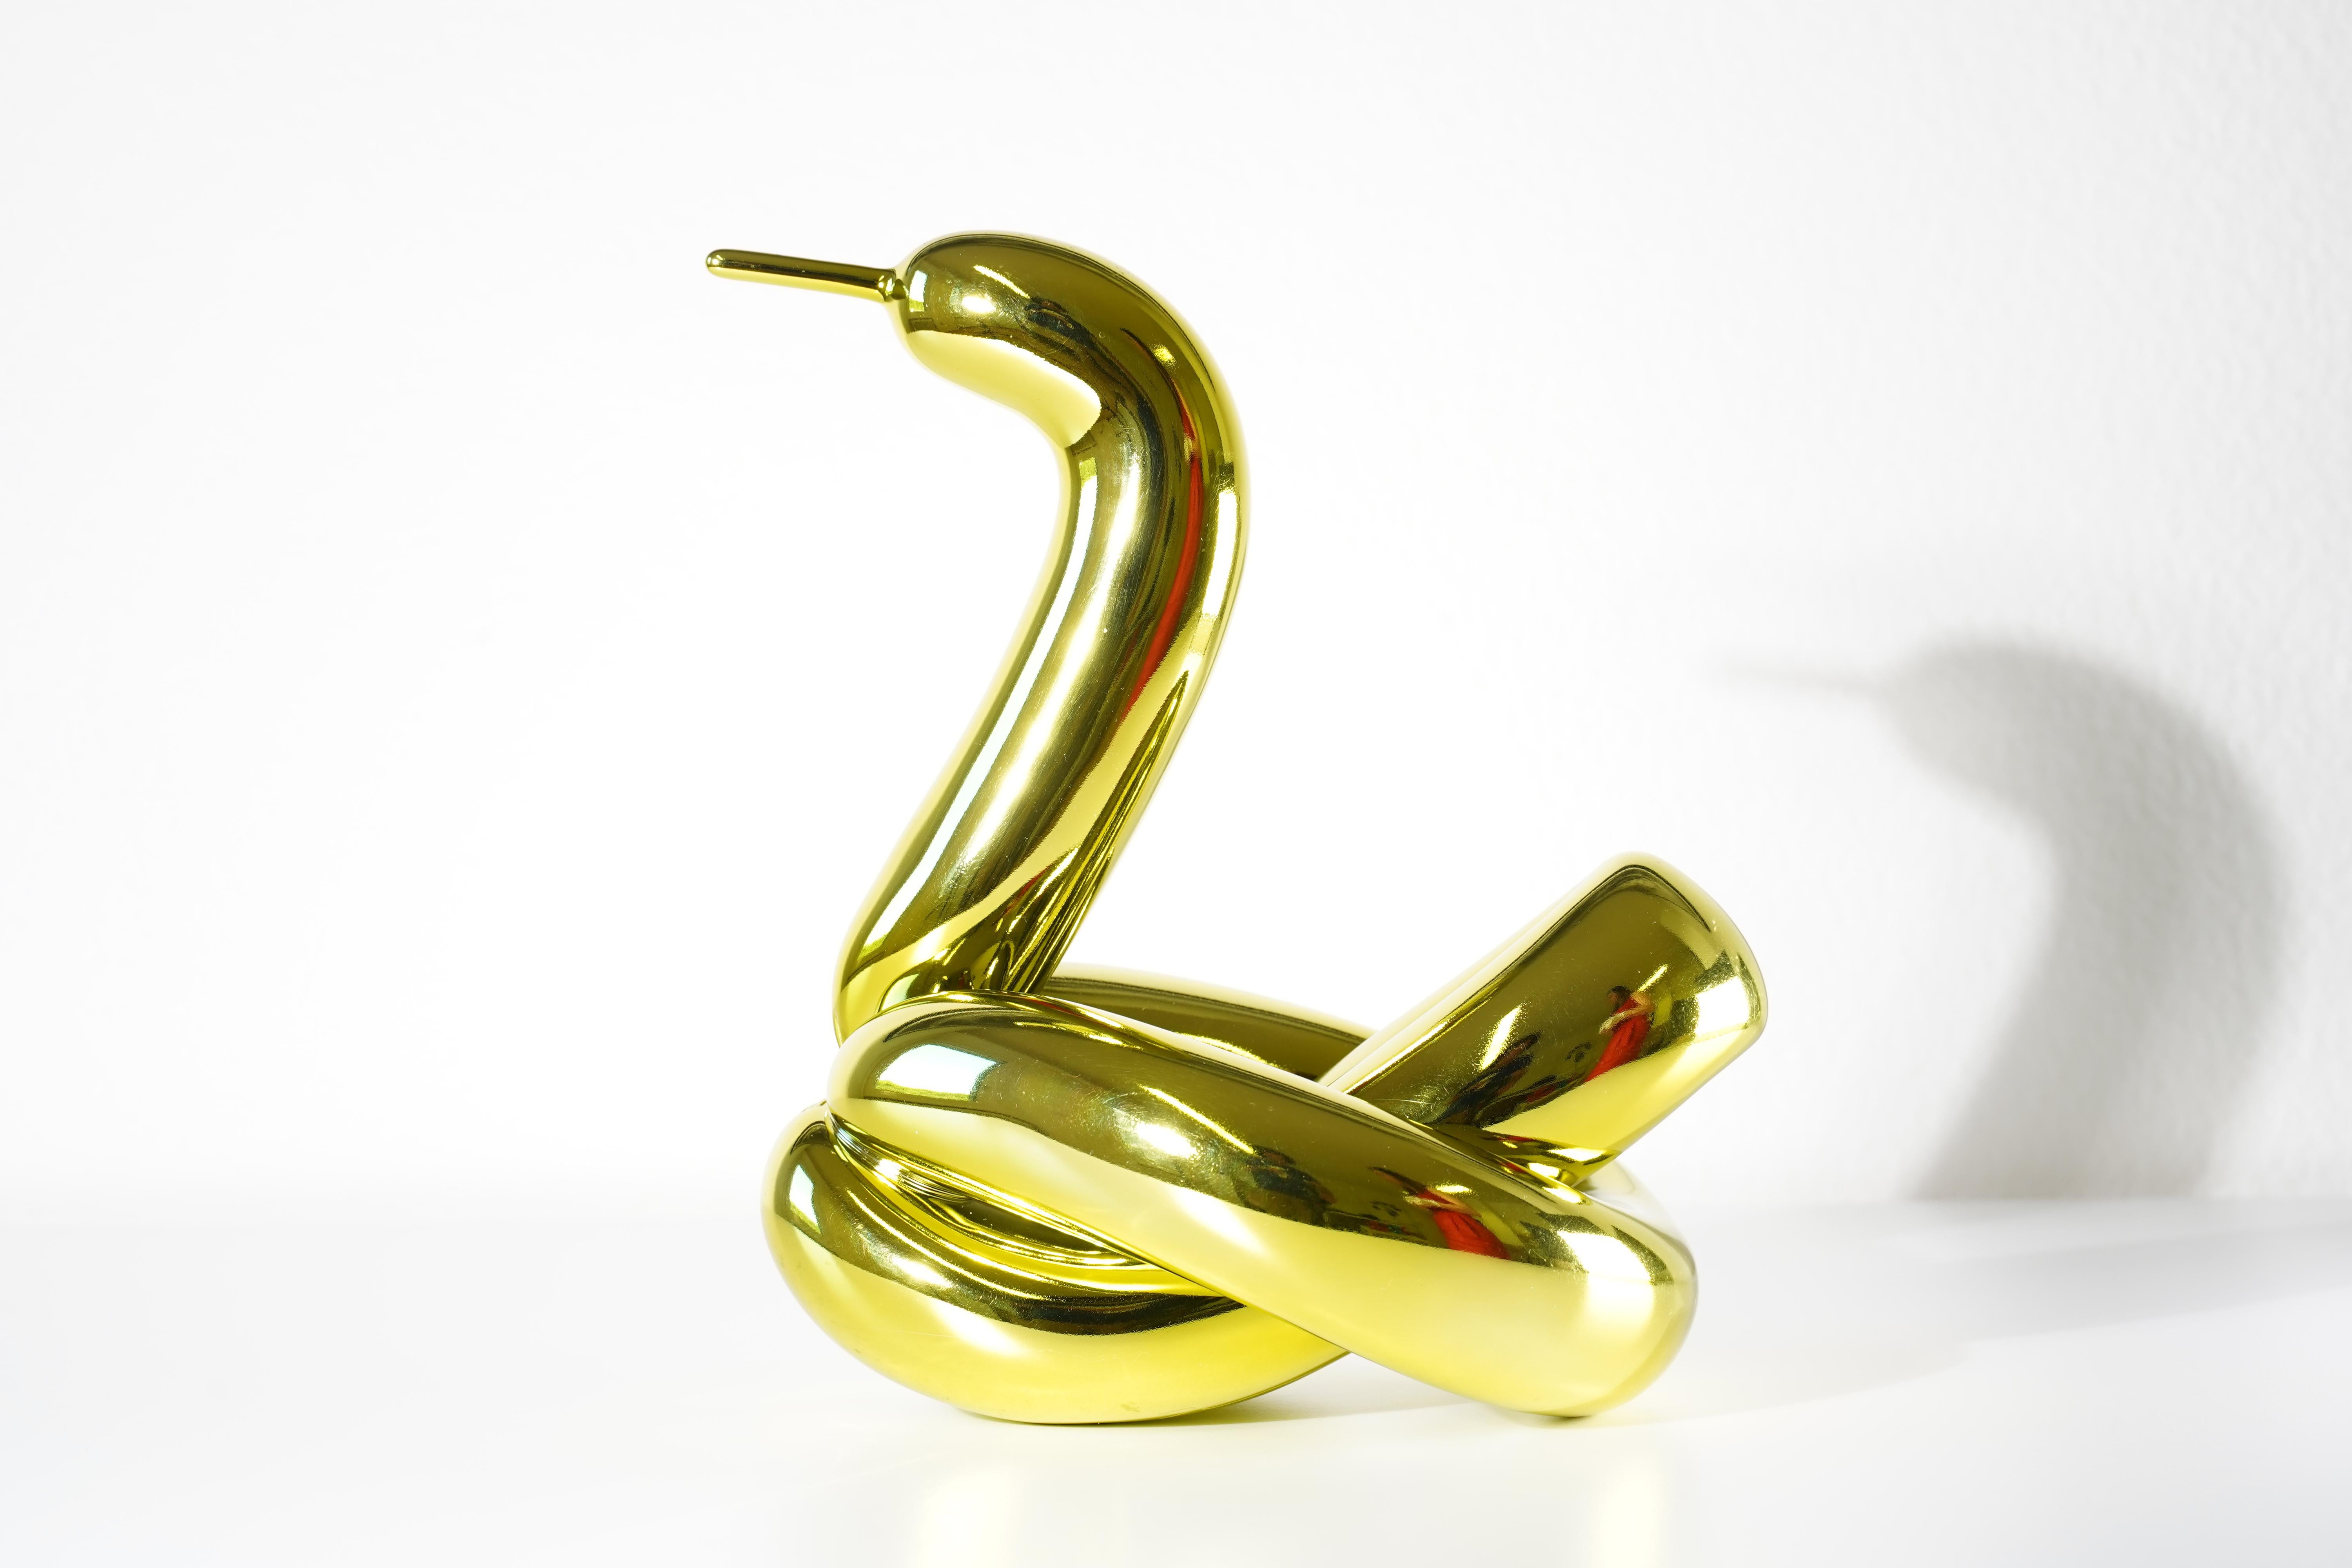 Balloon Swan (Yellow) - Jeff Koons, 21st Century, Contemporary, Porcelain, Sculpture, Decor, Limited Edition

Porcelaine de Limoges avec revêtement chromatique métallisé
Edition de 999
Signé et numéroté
En parfait état, tel qu'acheté chez le